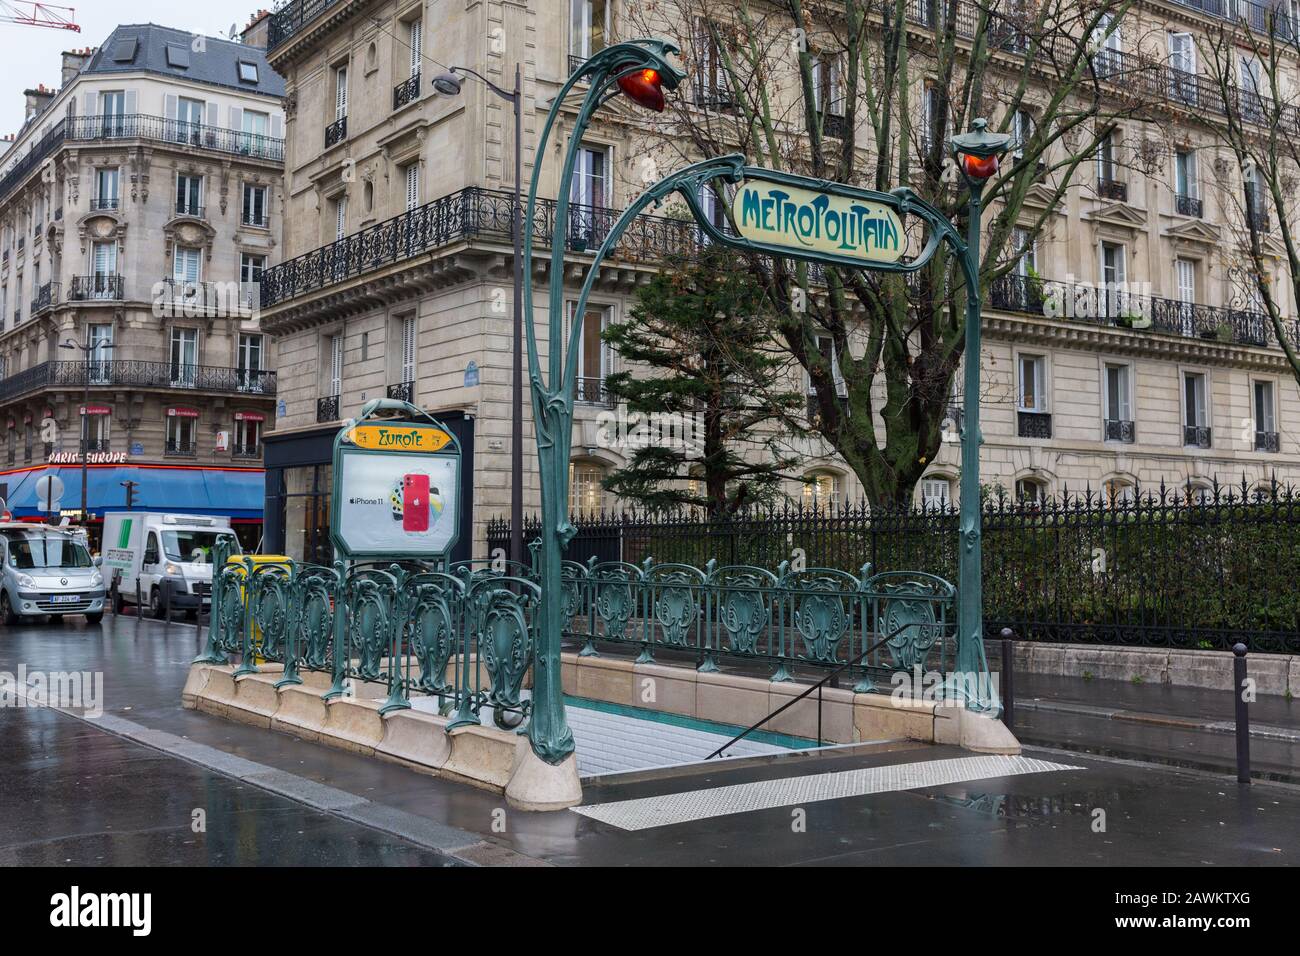 Entrée à la métropole - le métro / métro parisien. La conception de la rampe autour de la porte et le signe ci-dessus s'appelle Art Nouveau. Banque D'Images